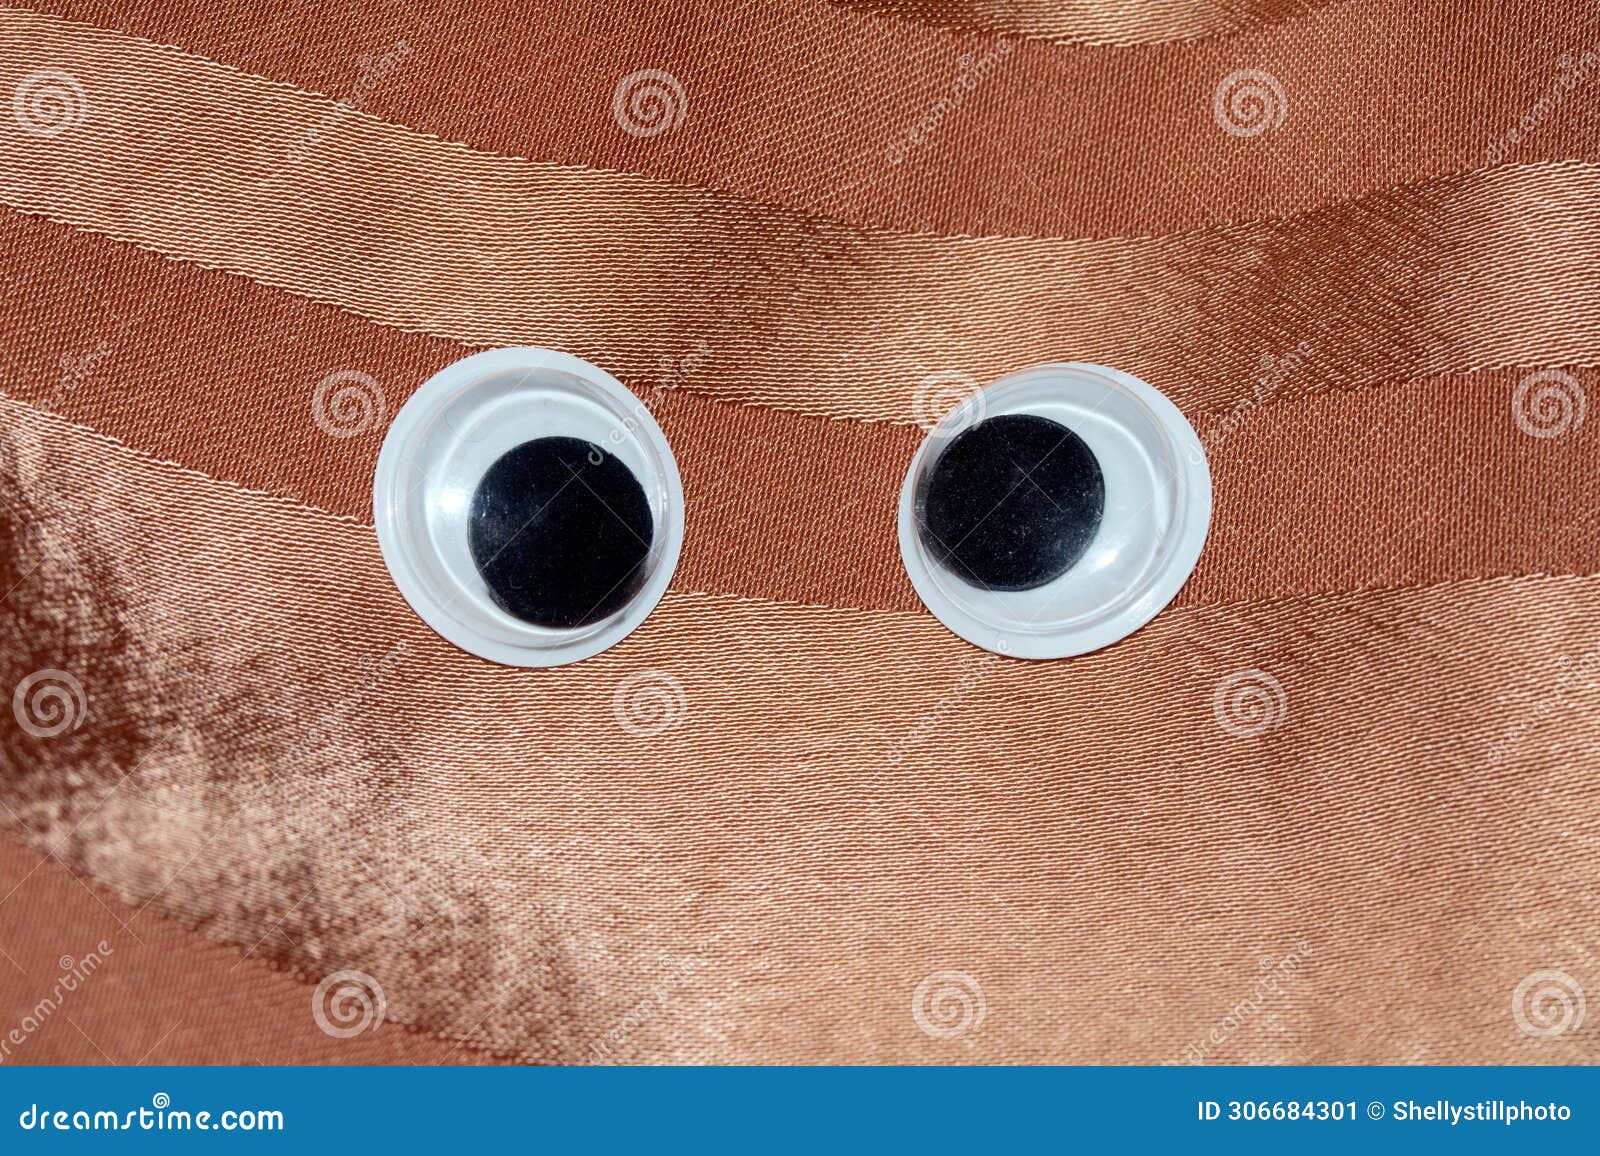 funny wiggle google eyes on fabric background